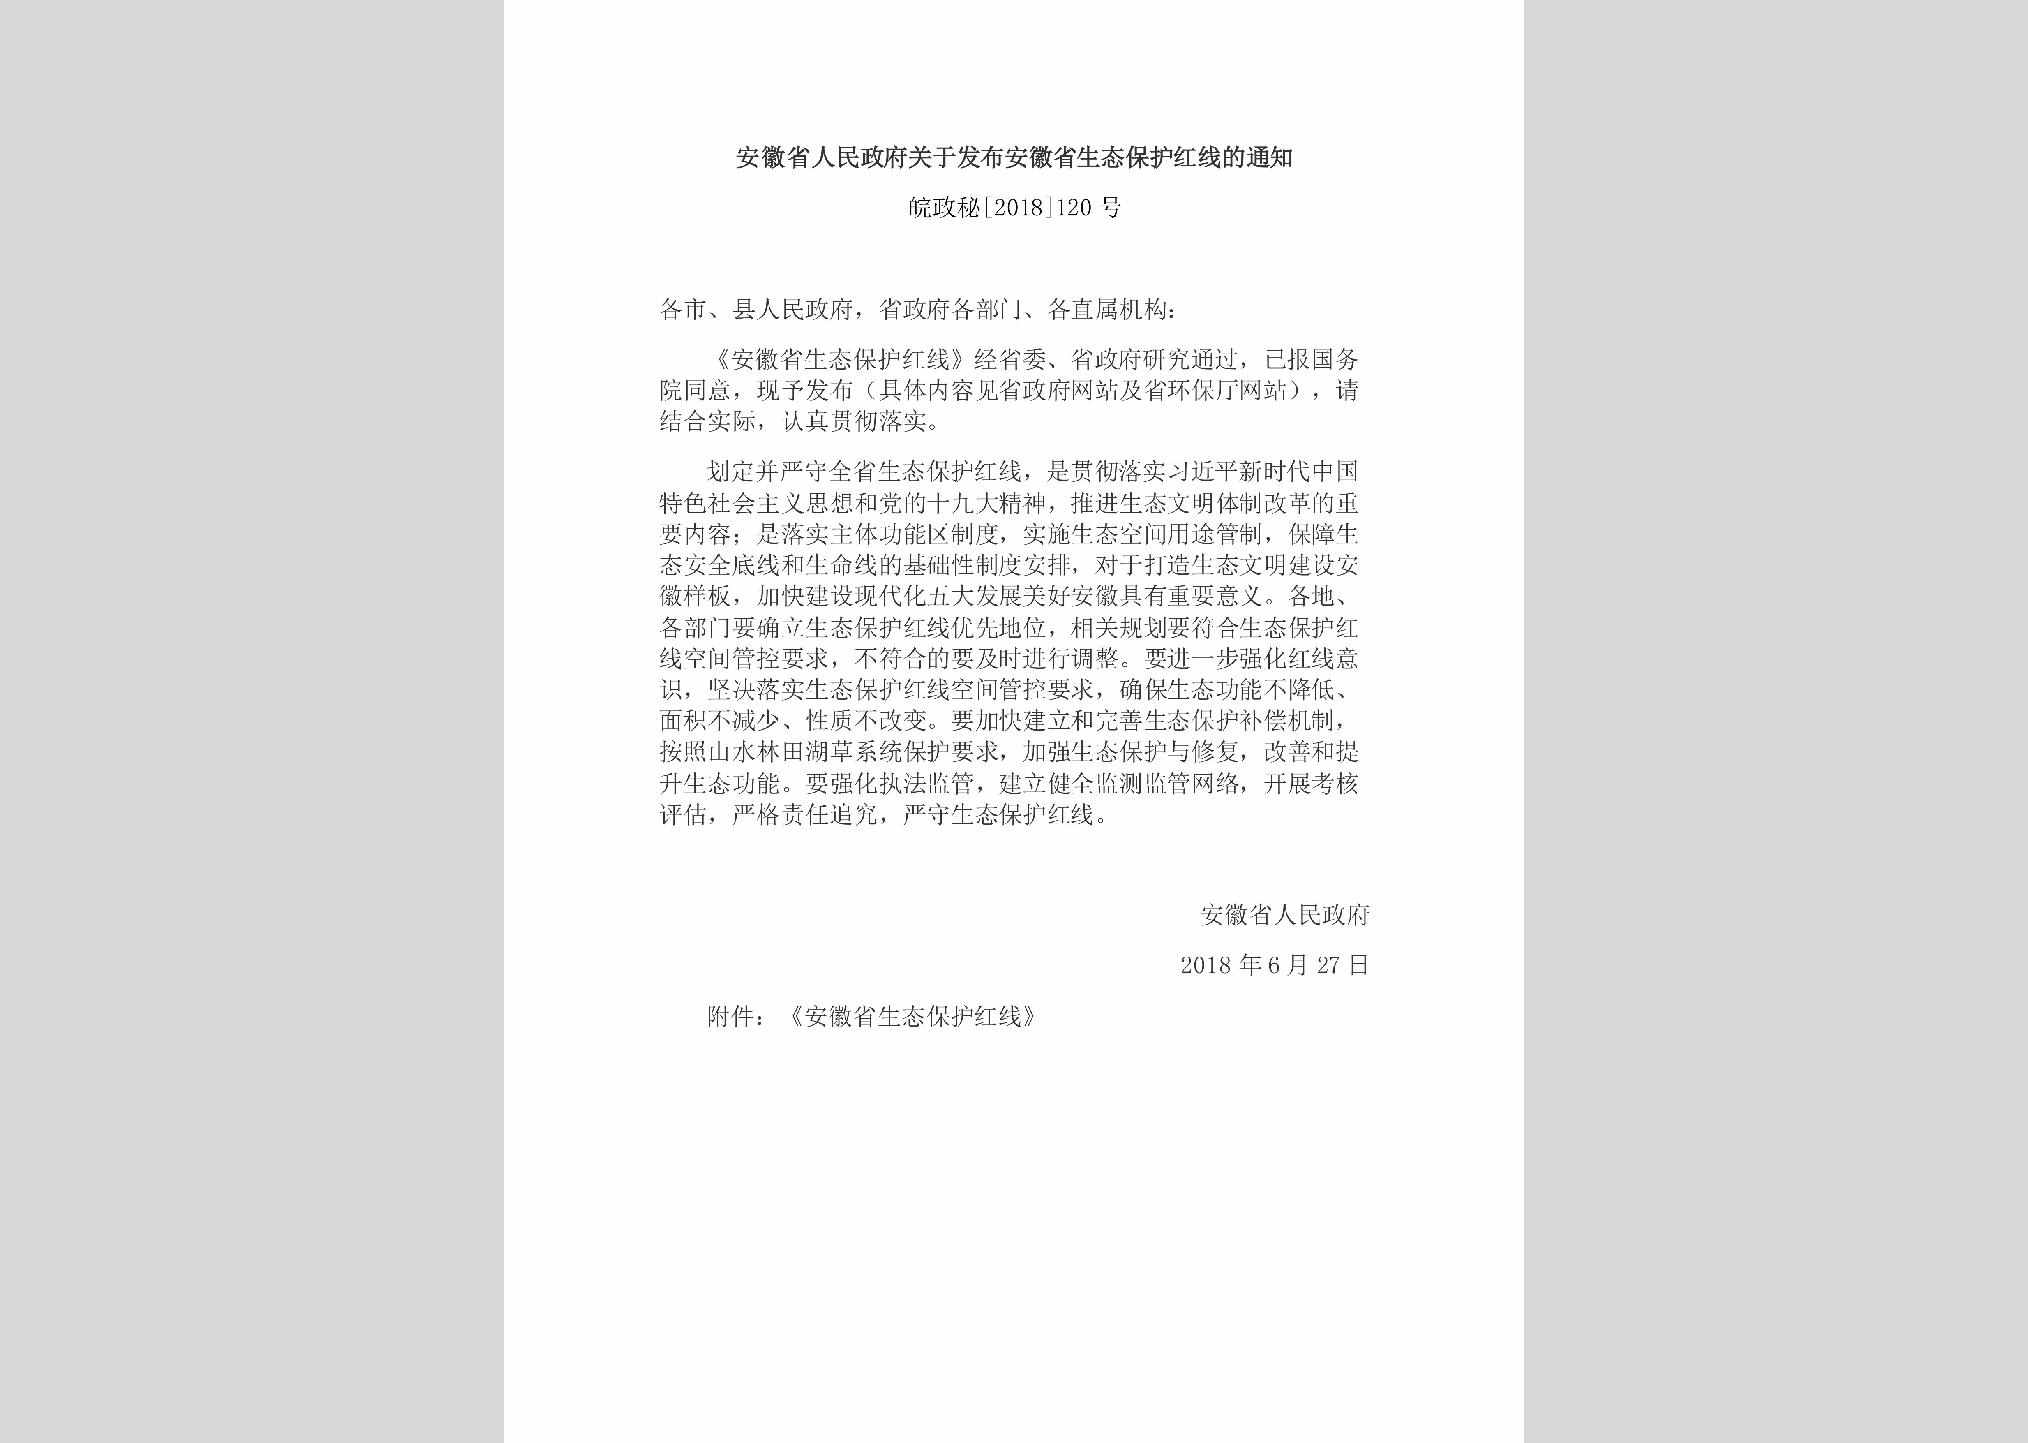 皖政秘[2018]120号：安徽省人民政府关于发布安徽省生态保护红线的通知